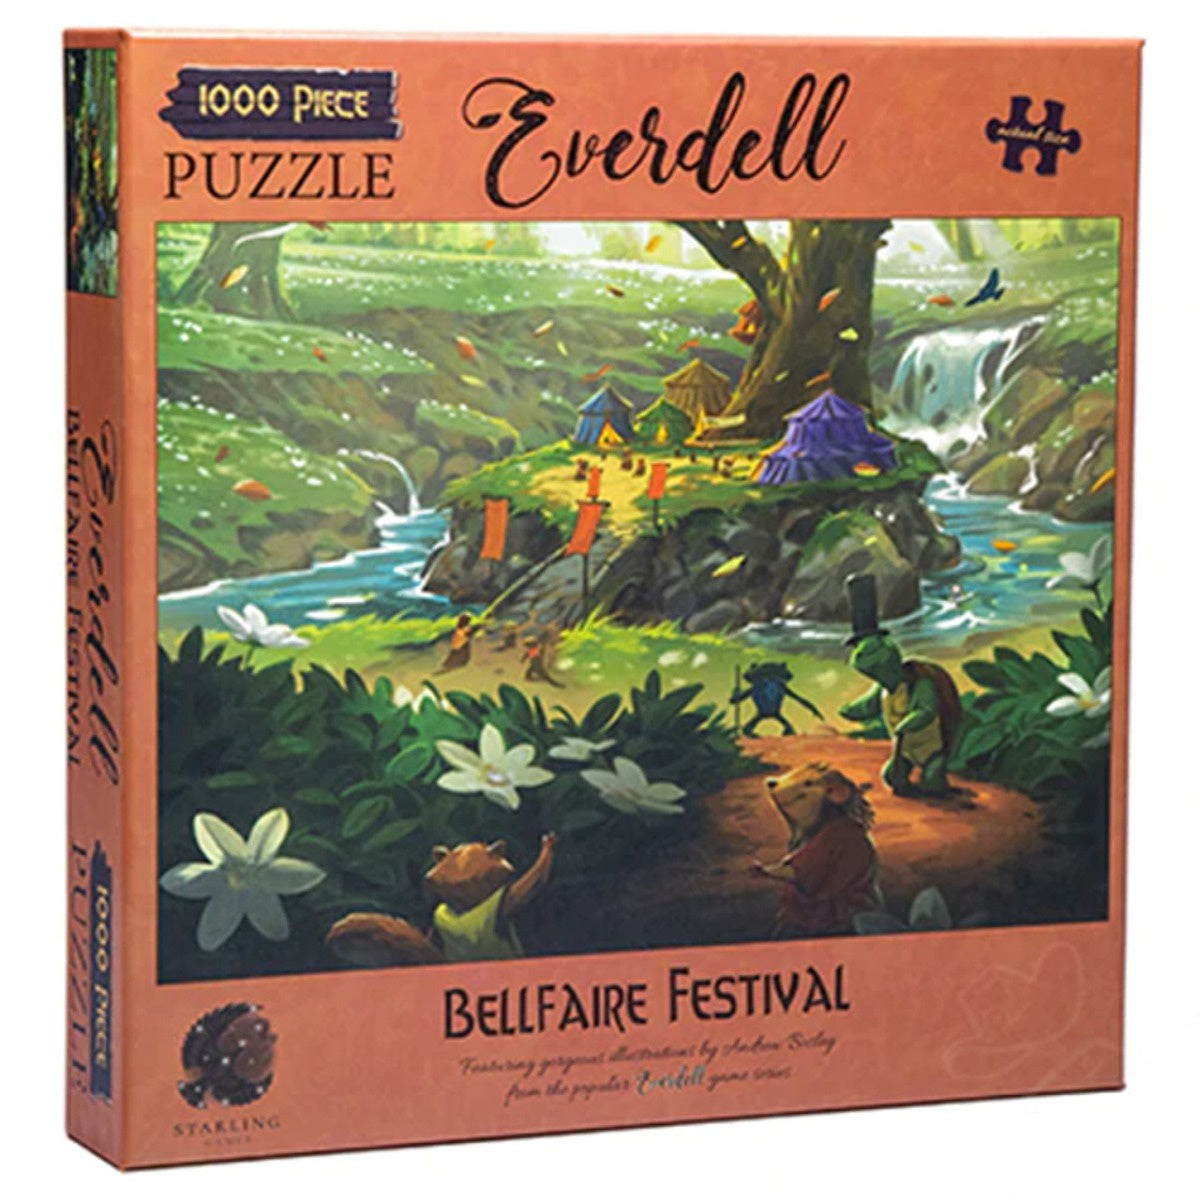 Everdell Bellfaire Festival 1000 Piece Jigsaw